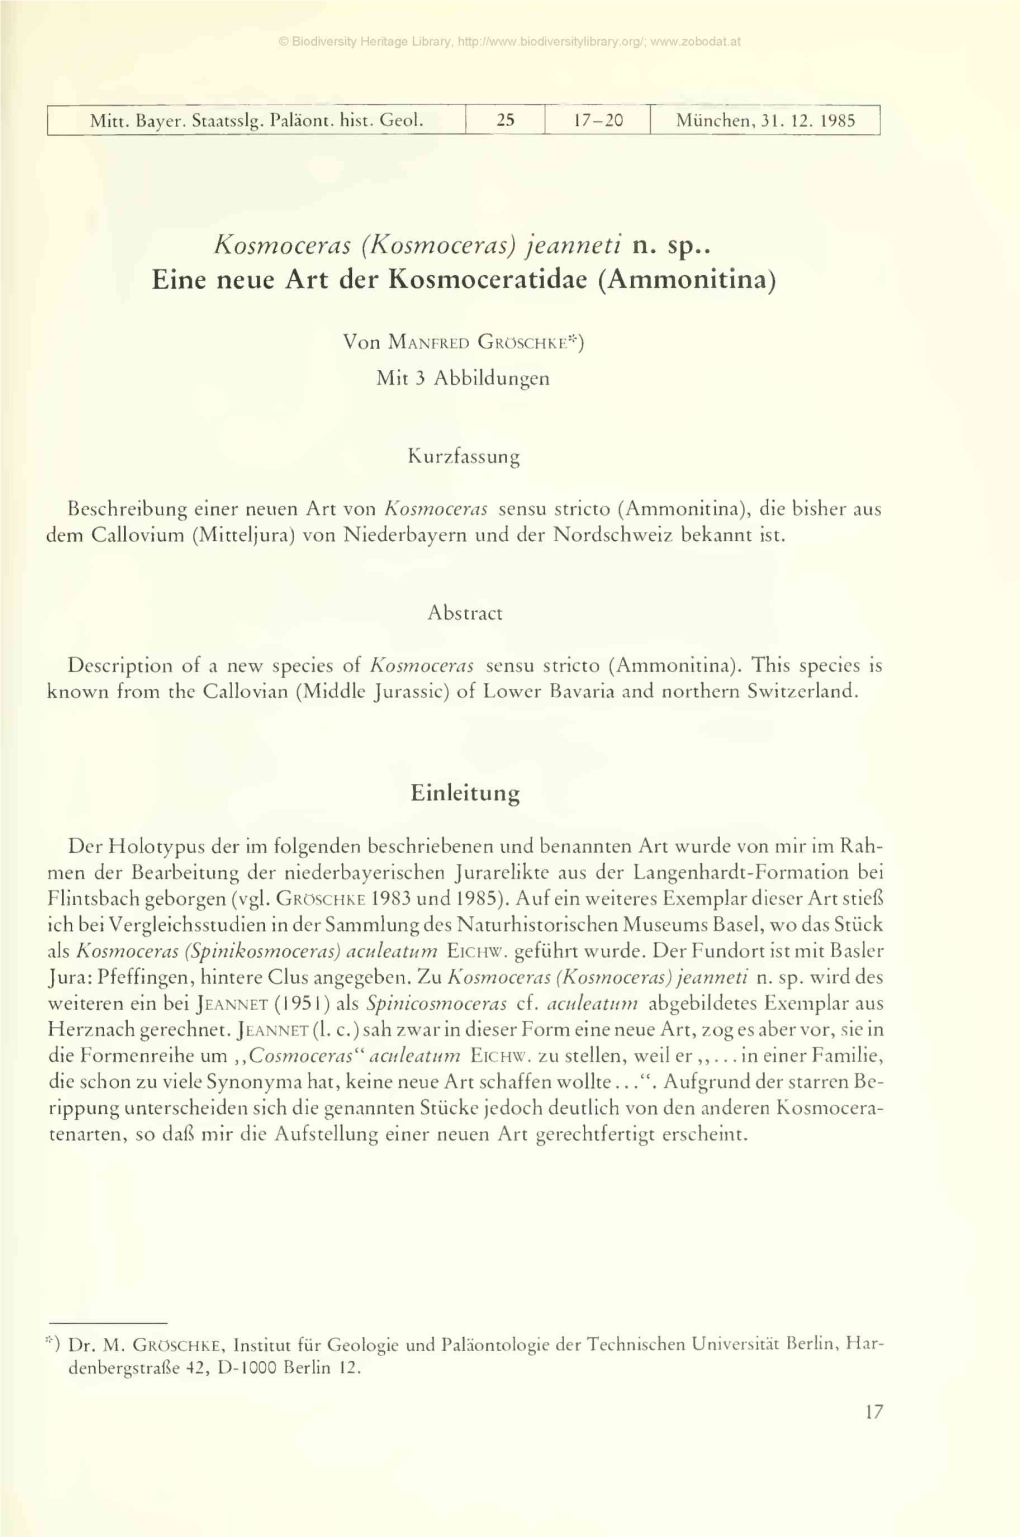 (Kosmoceras) Jeanneti N. Sp. . Eine Neue Art Der Kosmoceratidae